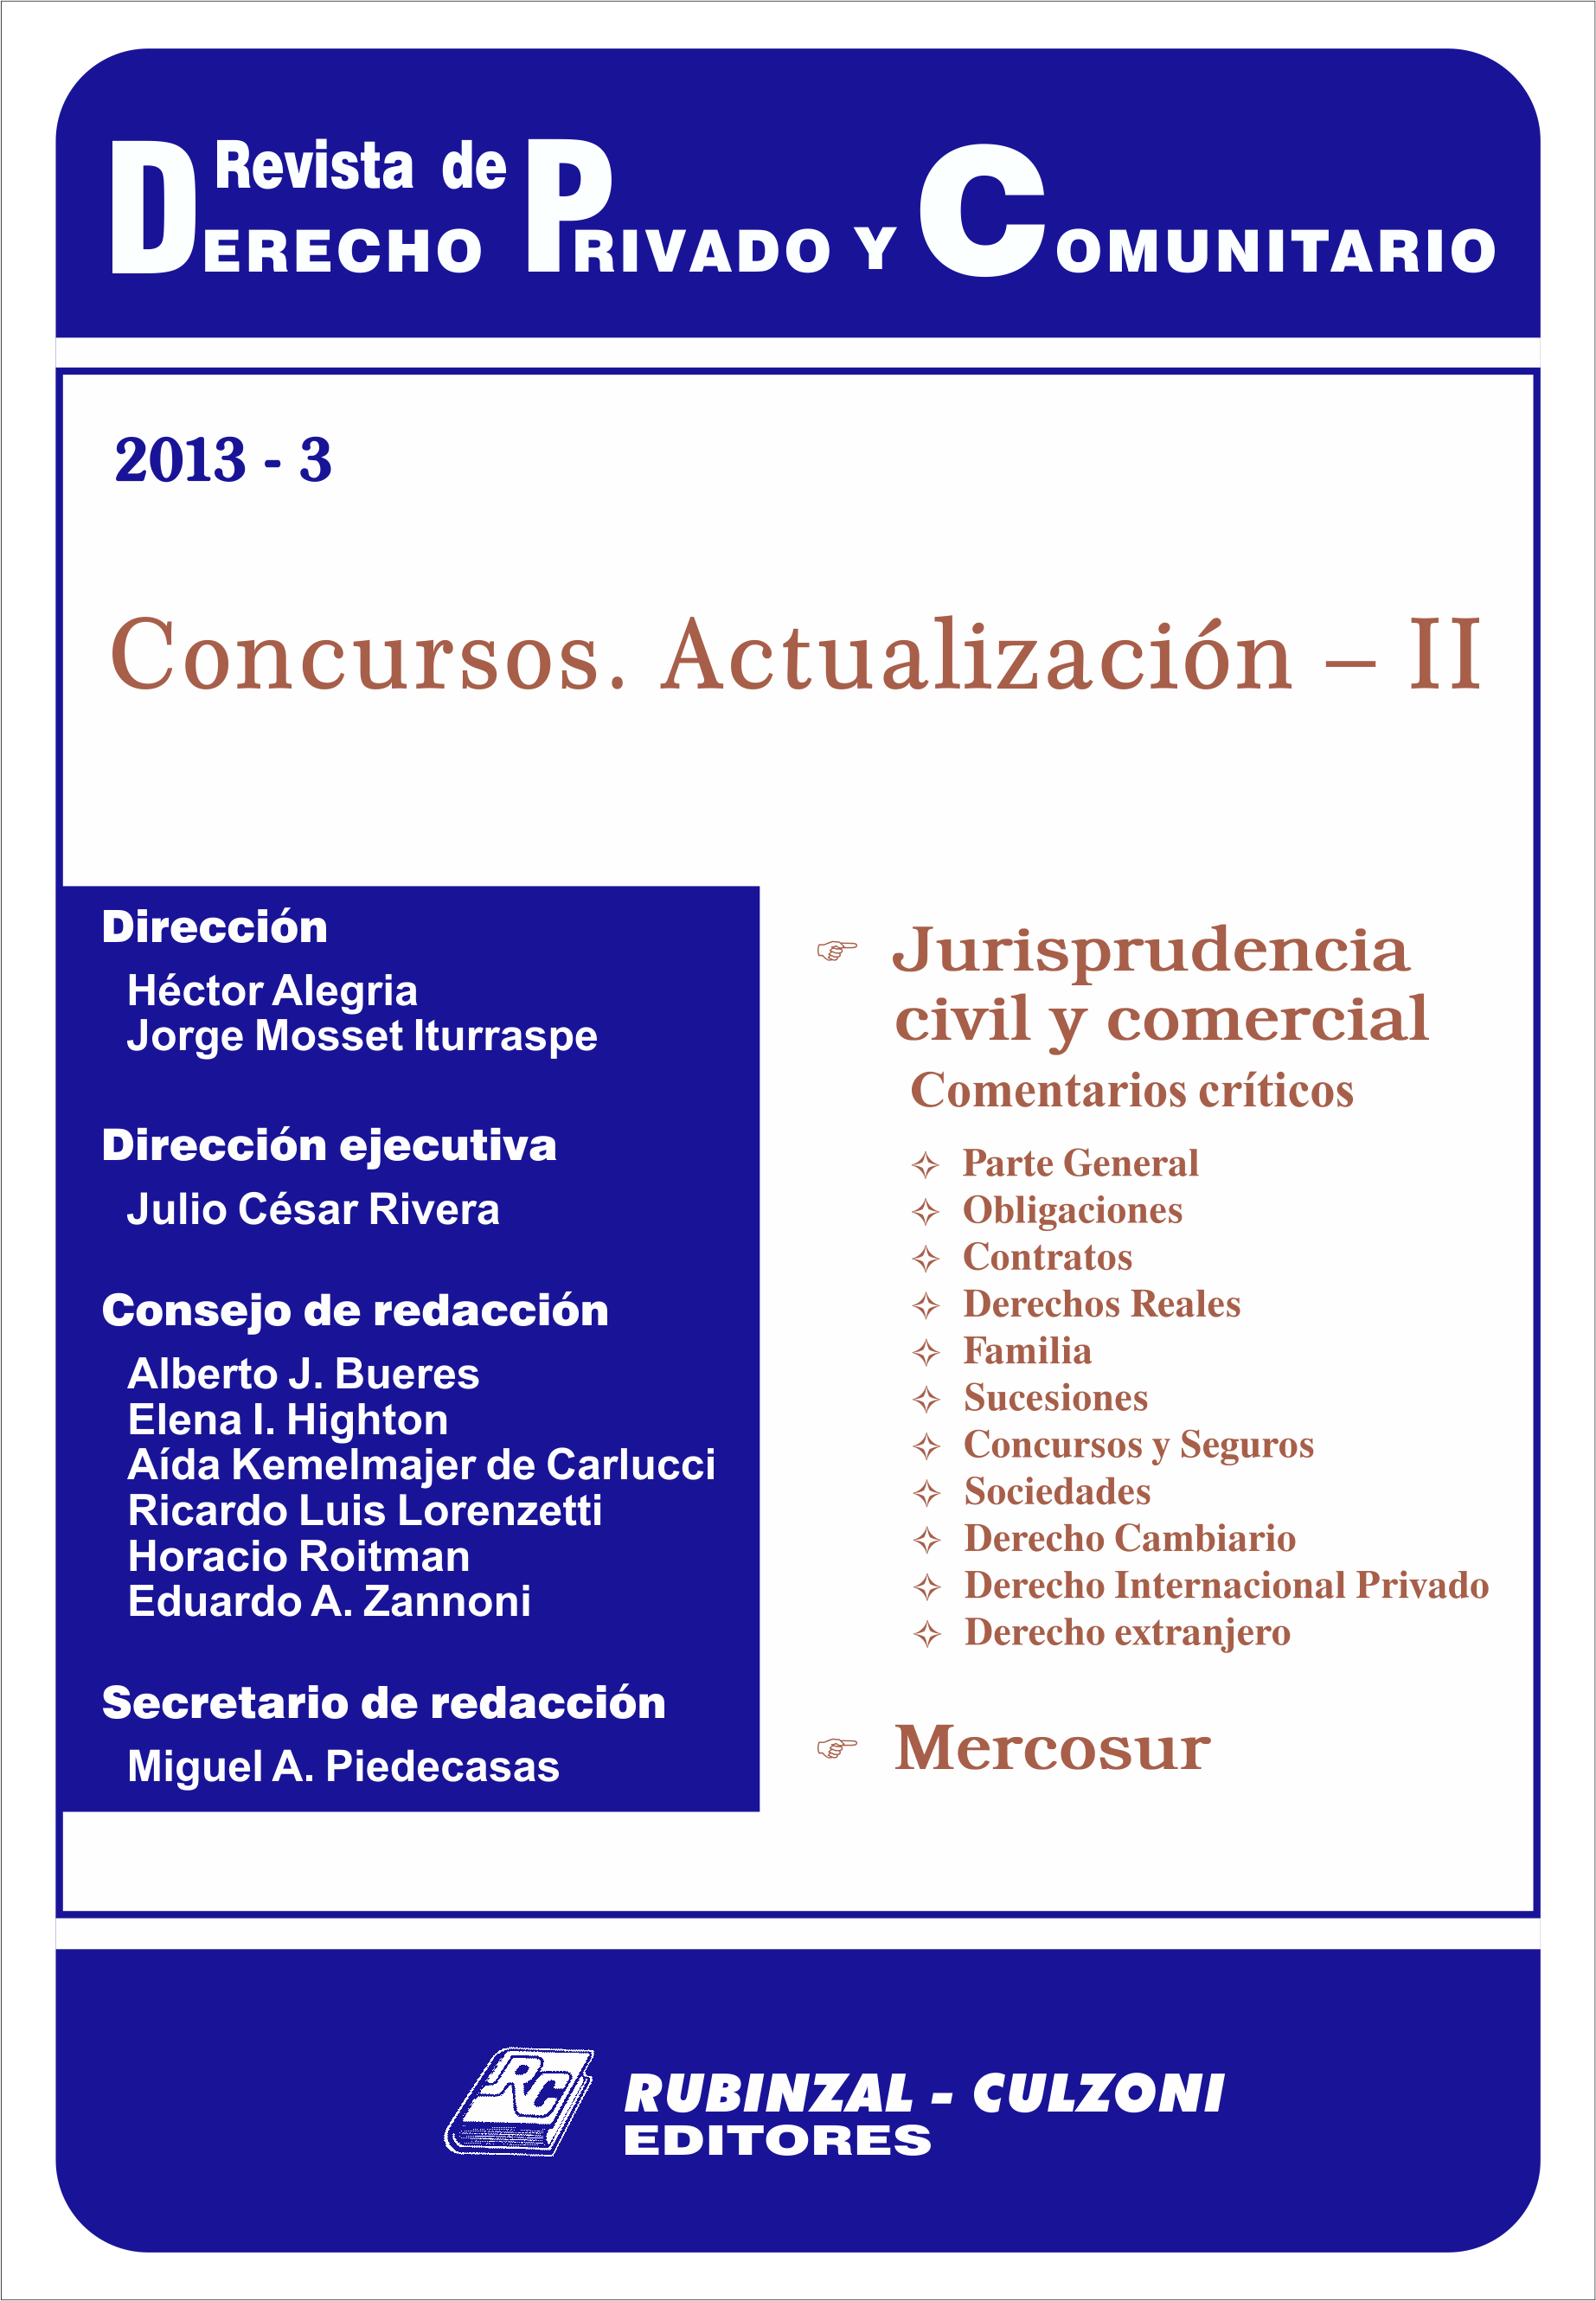 Revista de Derecho Privado y Comunitario - Concursos. Actualización - II.